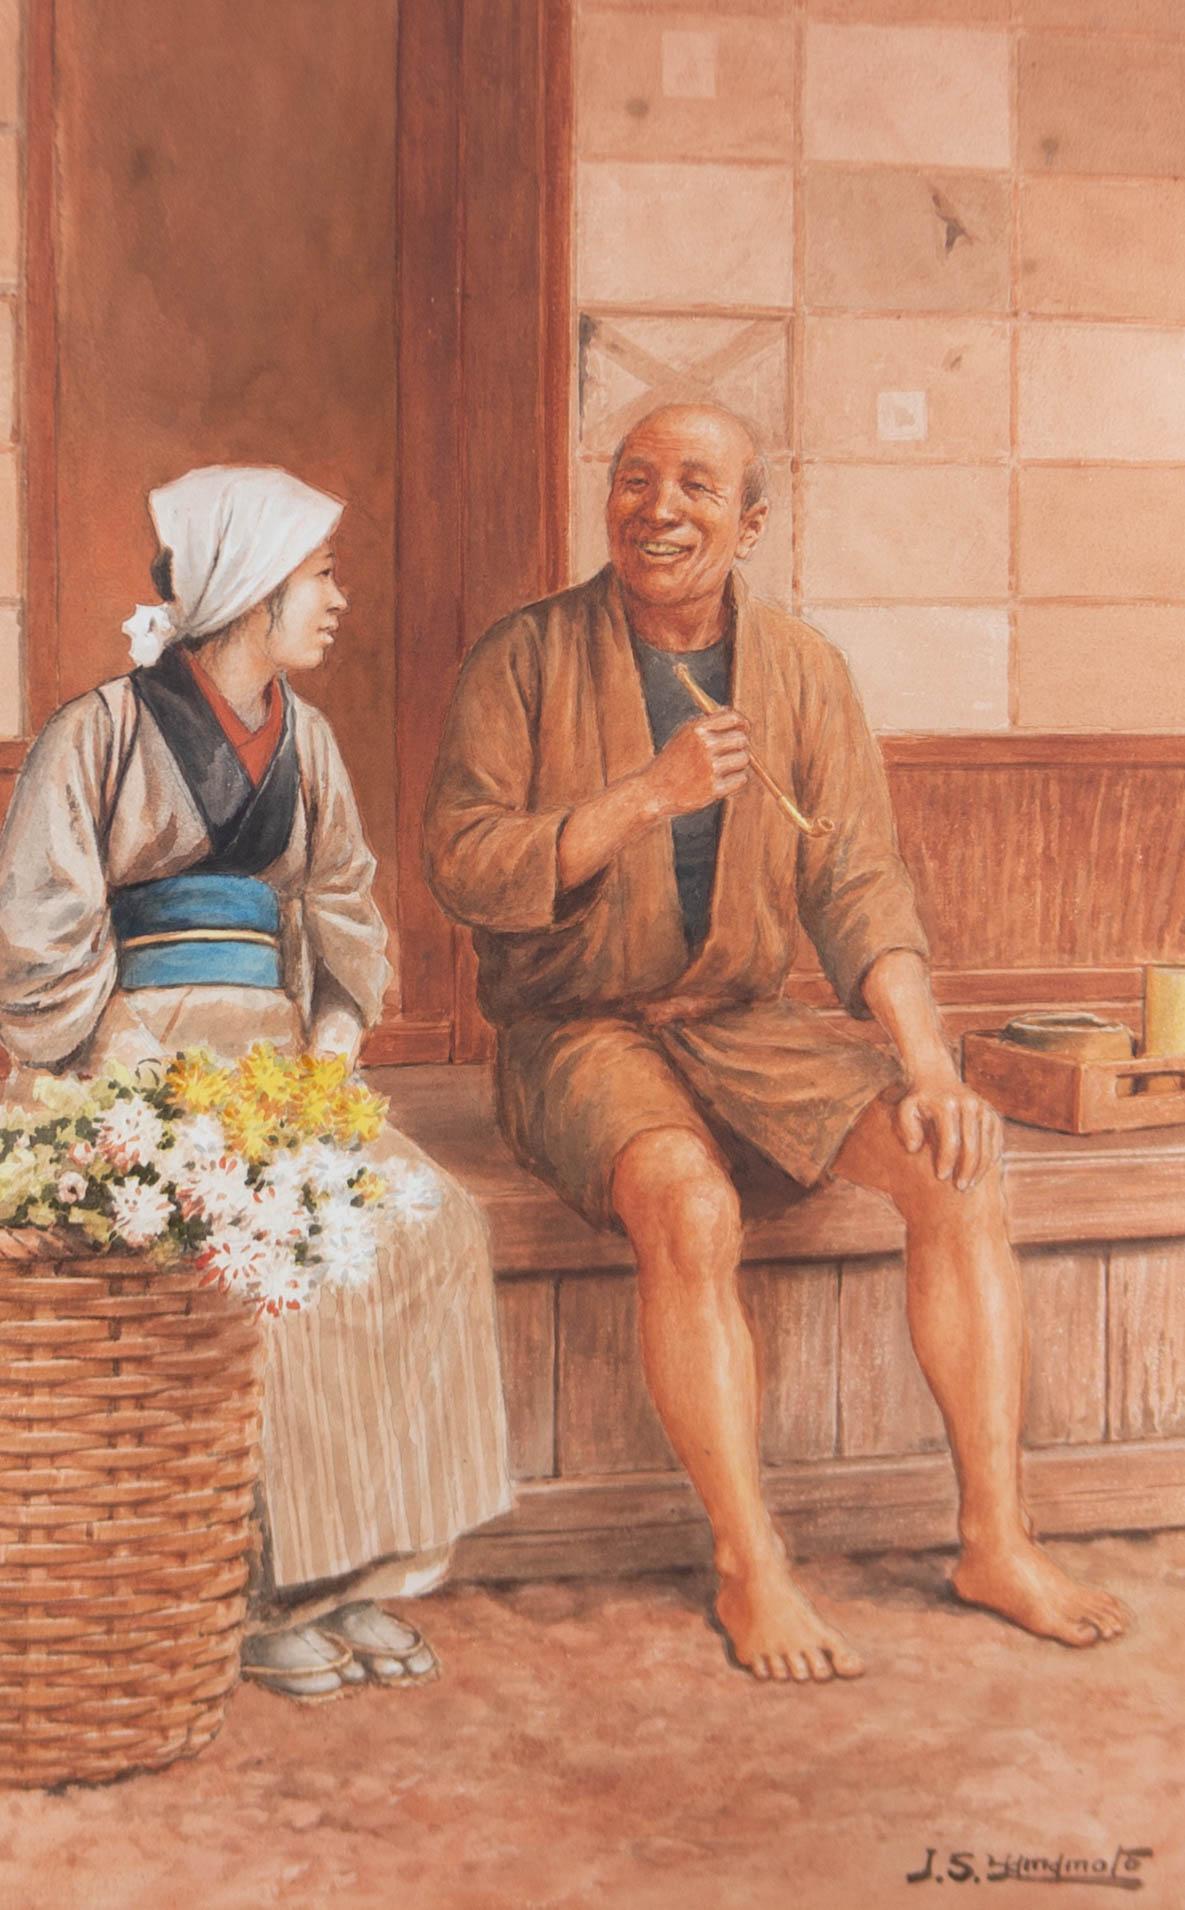 J.S. Yamamoto - Early 20th Century Watercolour, A Joyful Moment 2